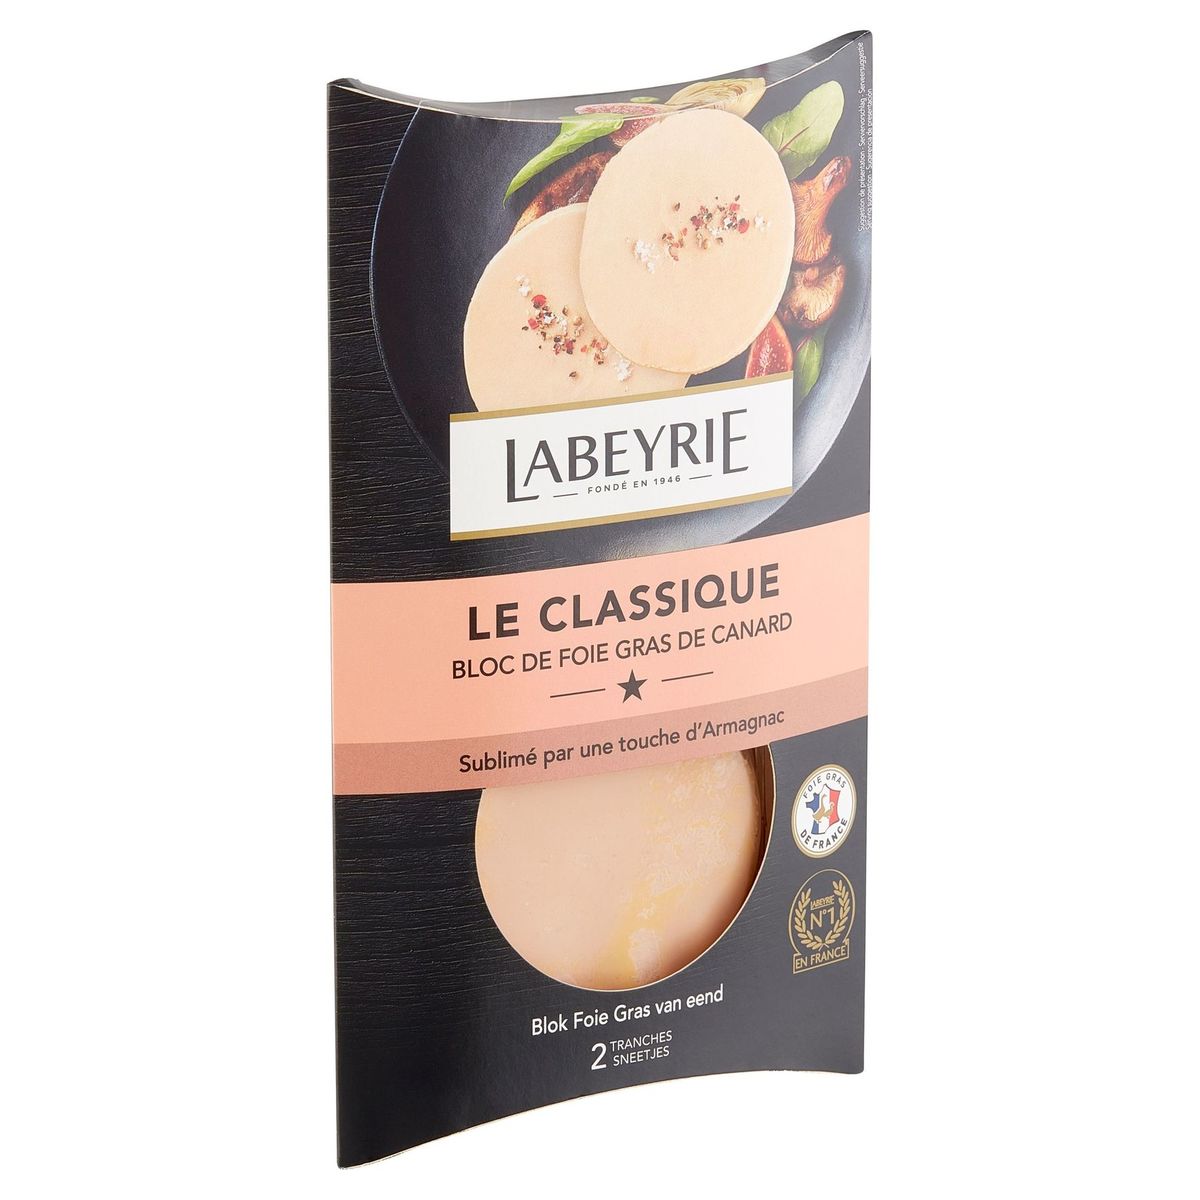 Labeyrie Le Classique Bloc de Foie Gras de Canard 80 g